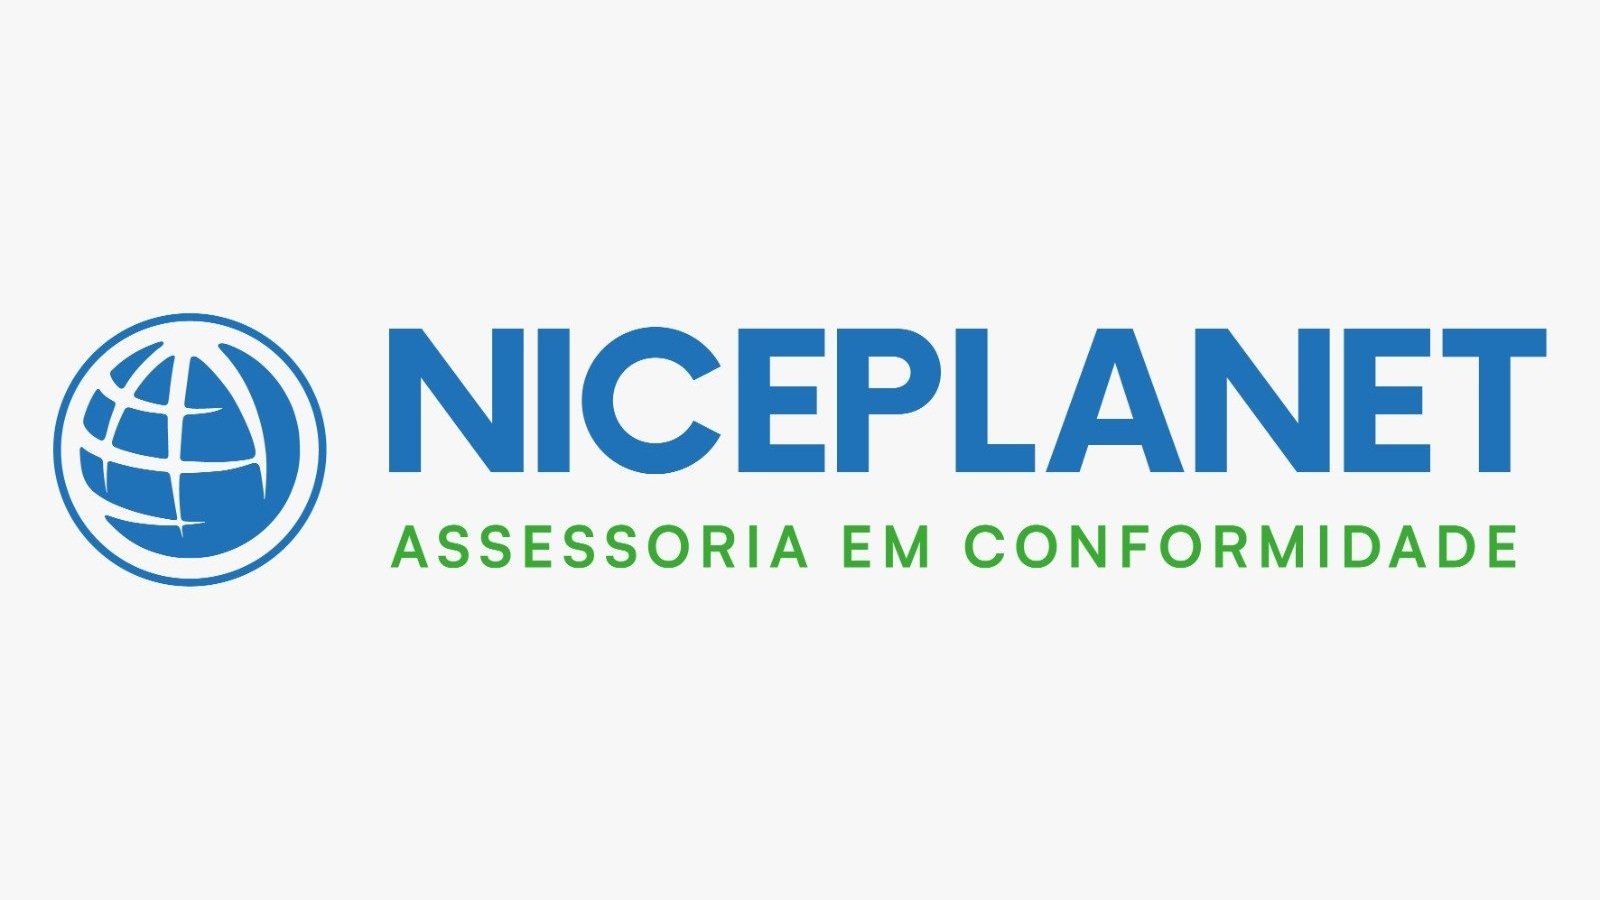 NOVA+Niceplanet+Assessoria+em+Conformidade.jpg